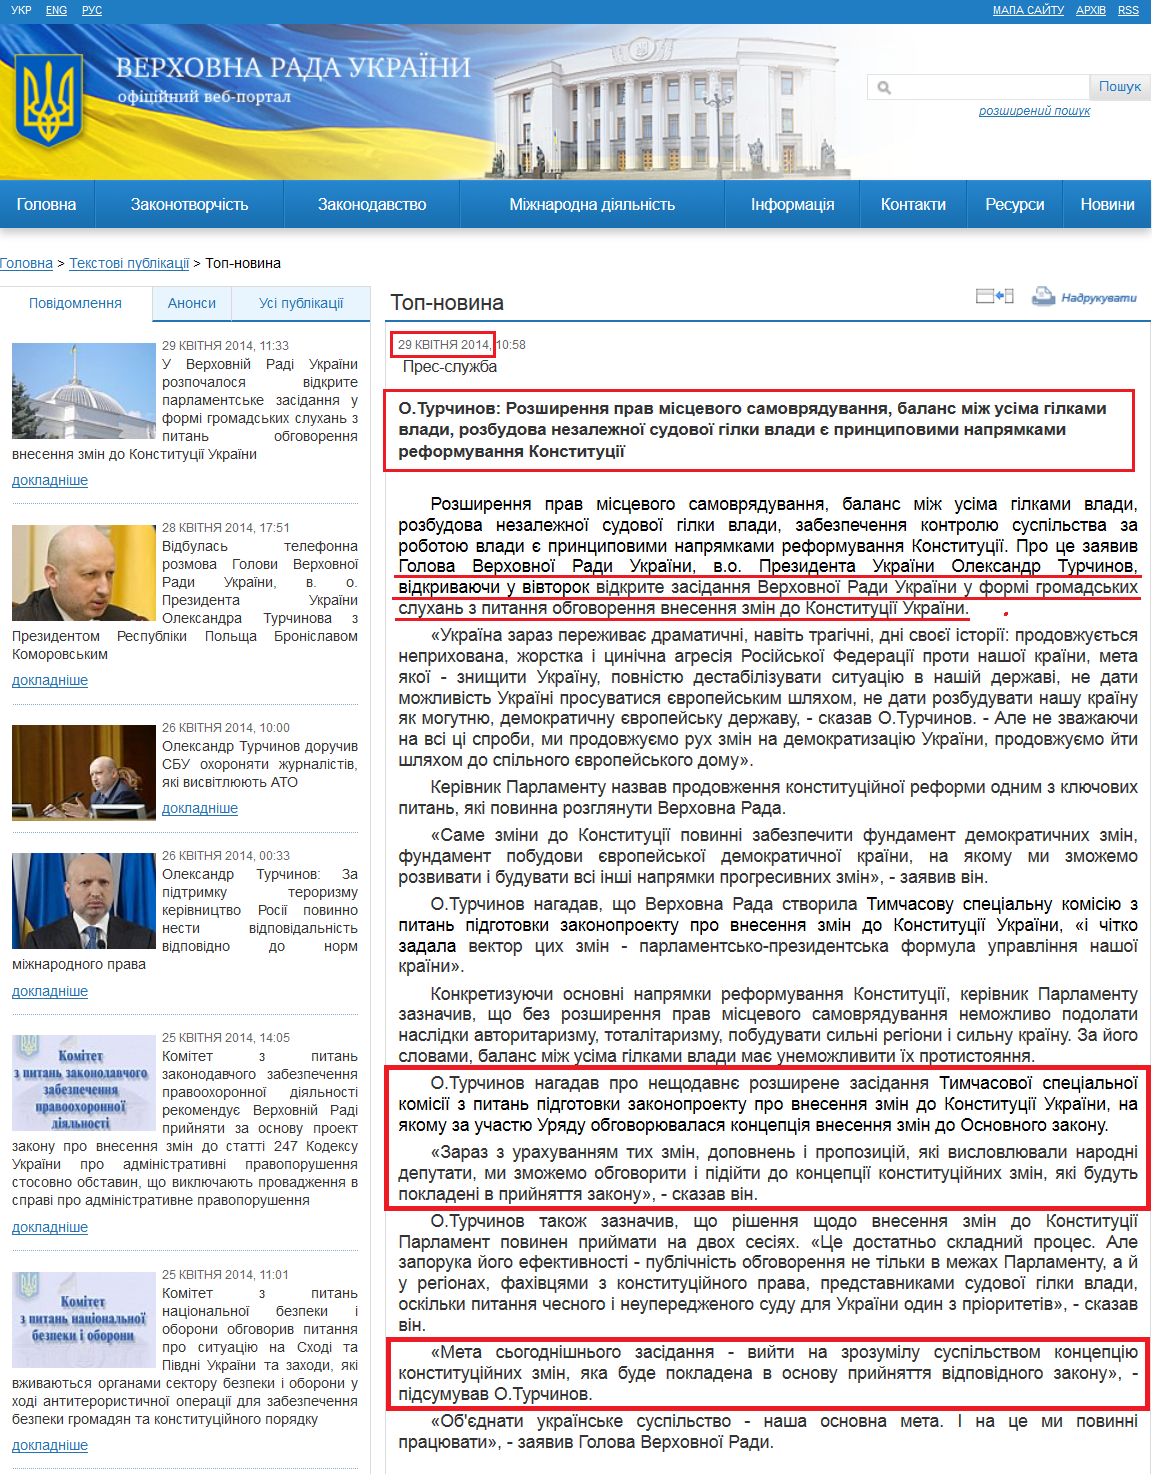 http://rada.gov.ua/news/Top-novyna/92142.html